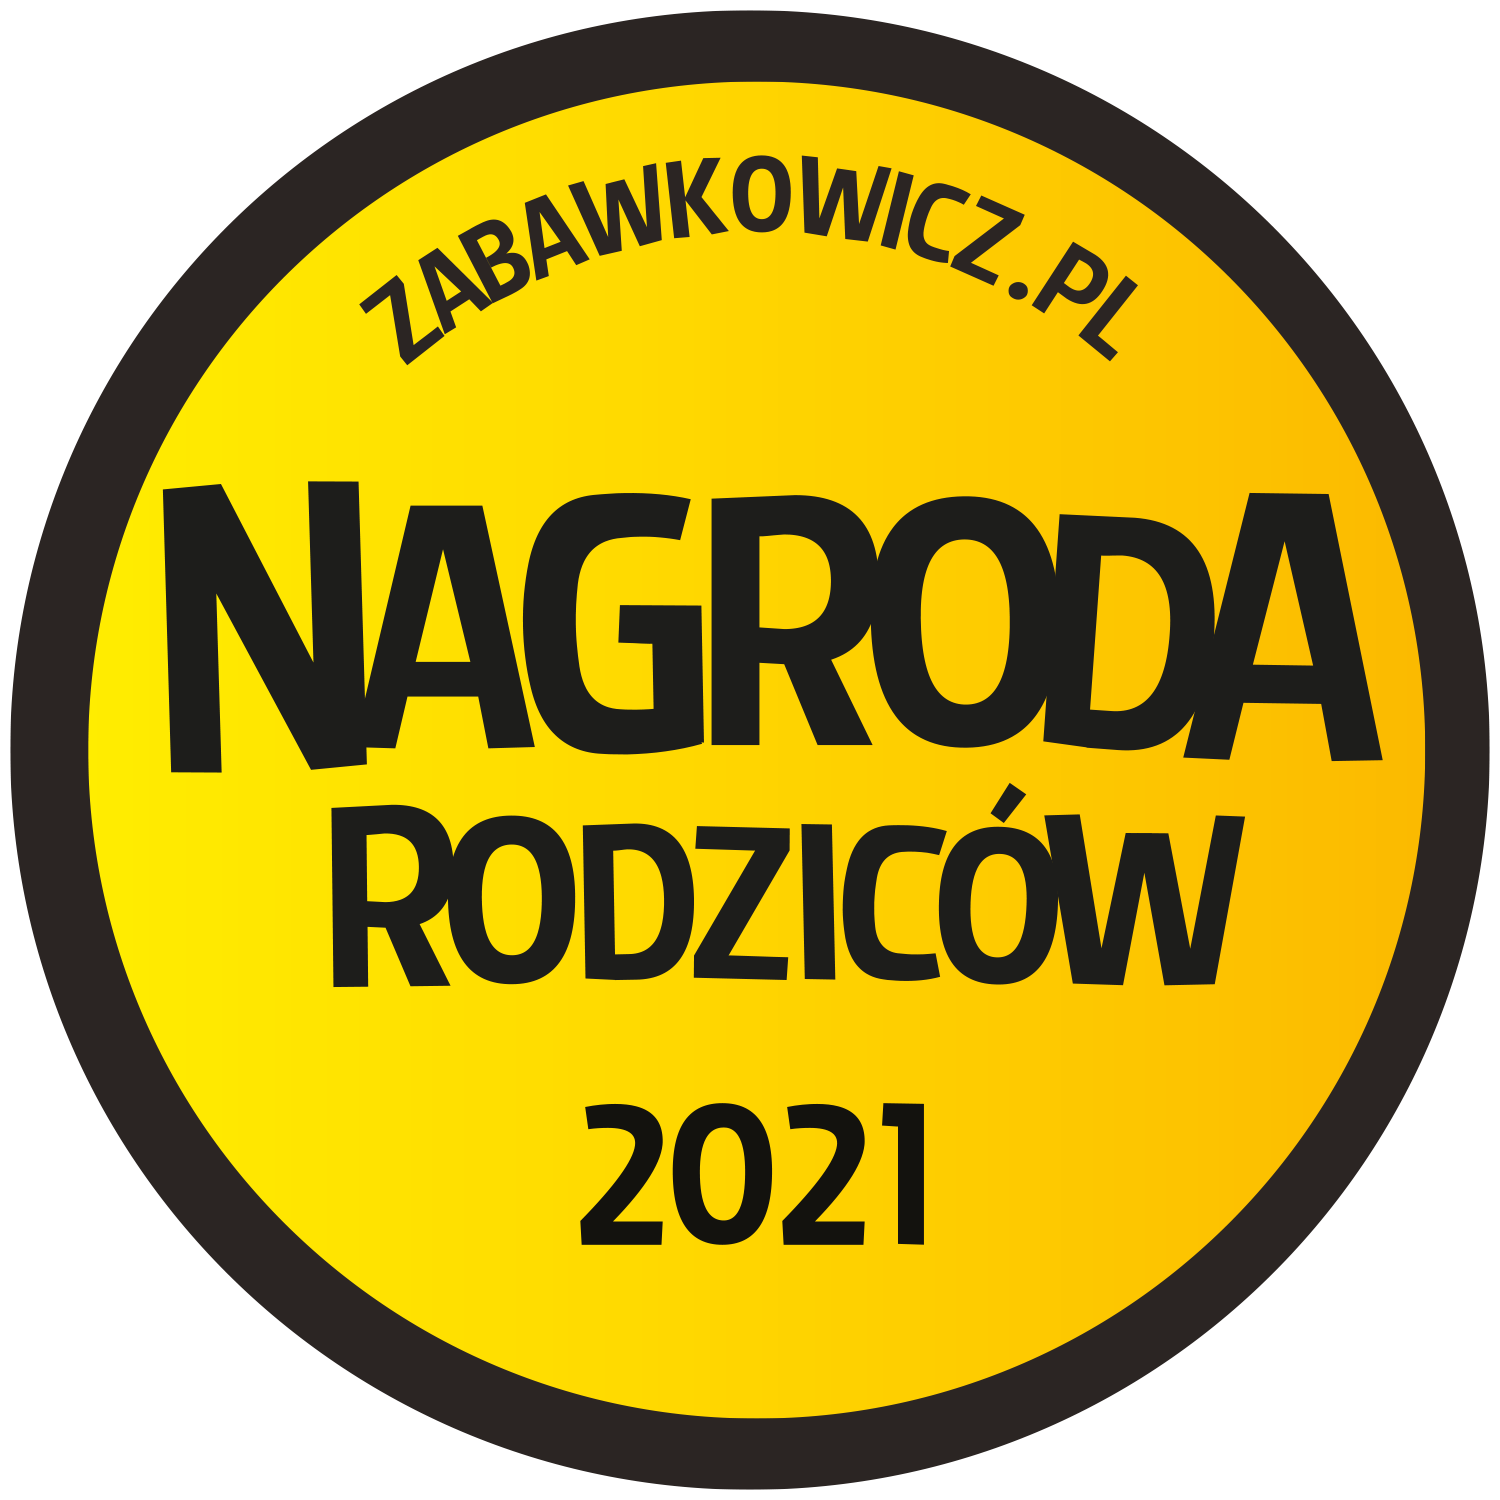 Nagroda Rodzicow 2021- logo